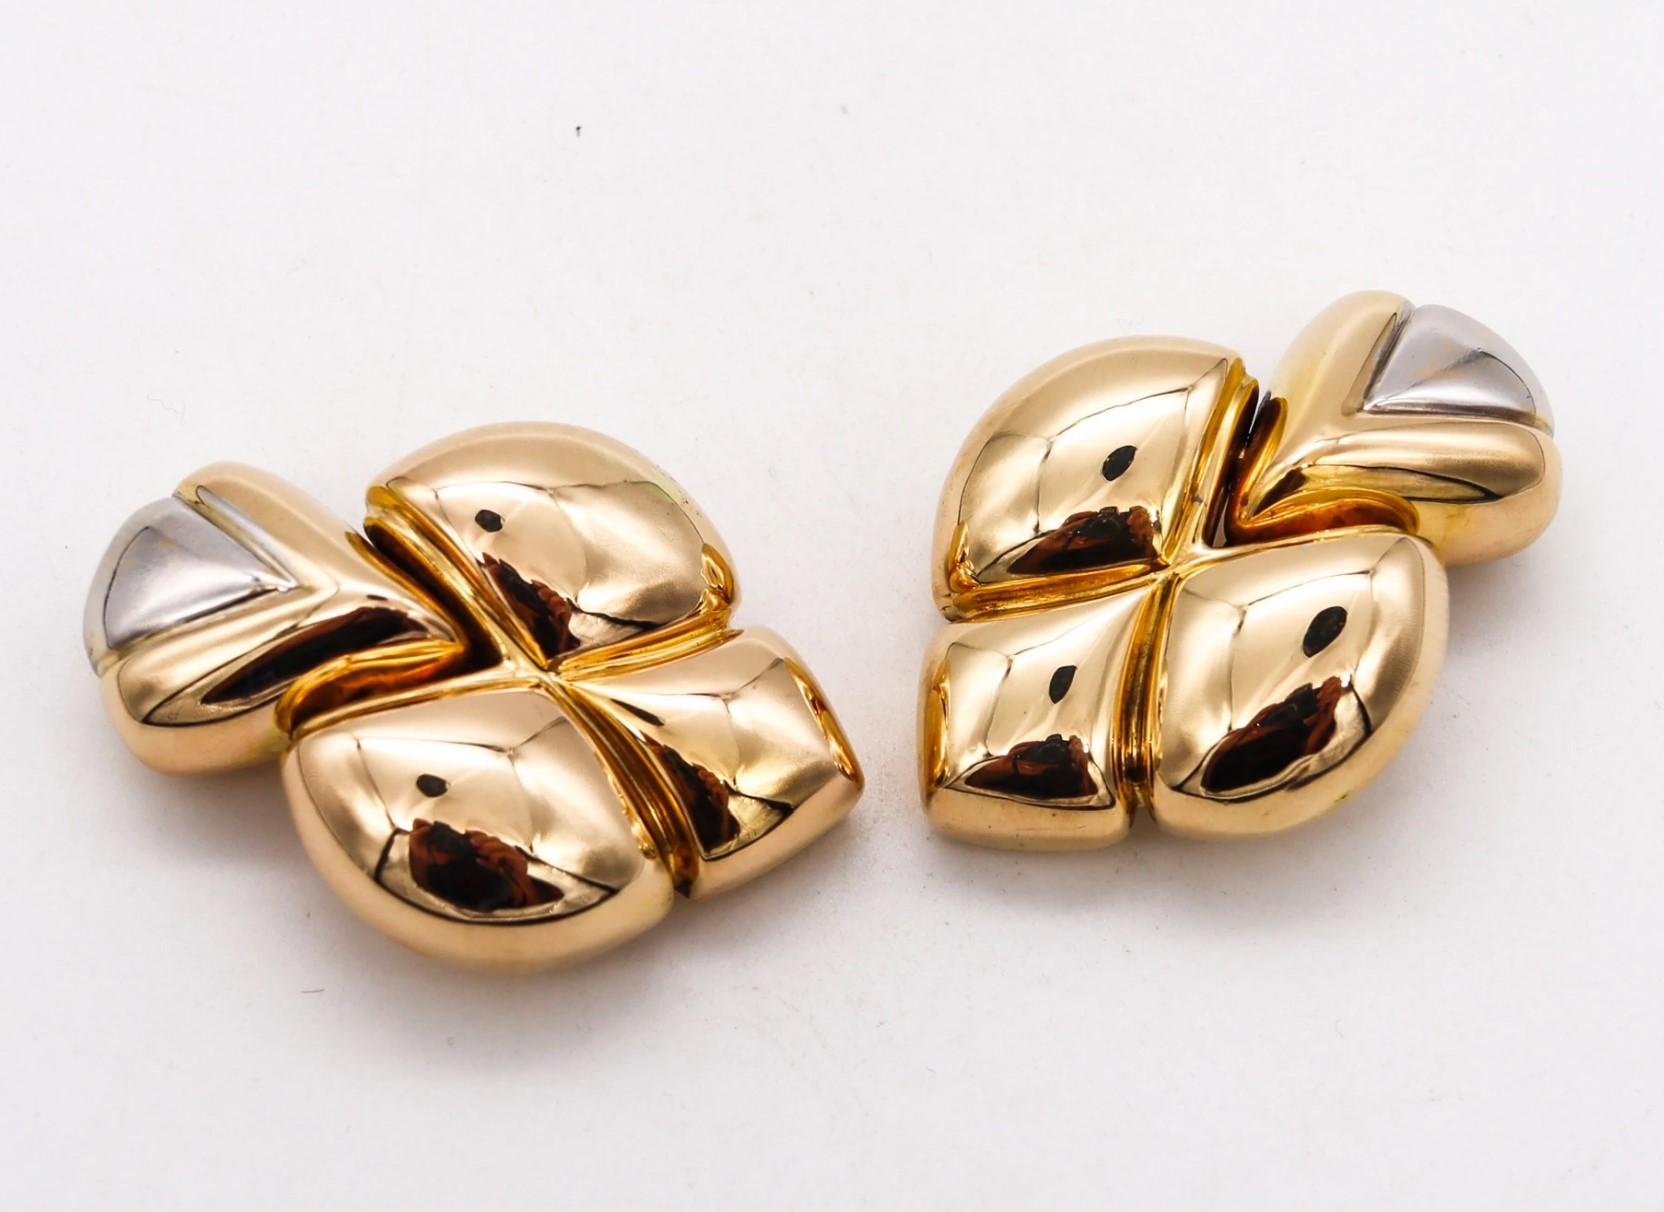 Gepolsterte Ohrringe mit Clipverschluss, entworfen von Chaumet.

Modernes, elegantes Paar, kreiert in Paris von dem berühmten französischen Schmuckhaus Chaumet. Diese langen, gepolsterten Fleur d'Lys-Ohrringe sind aus 18-karätigem Gelb- und Weißgold